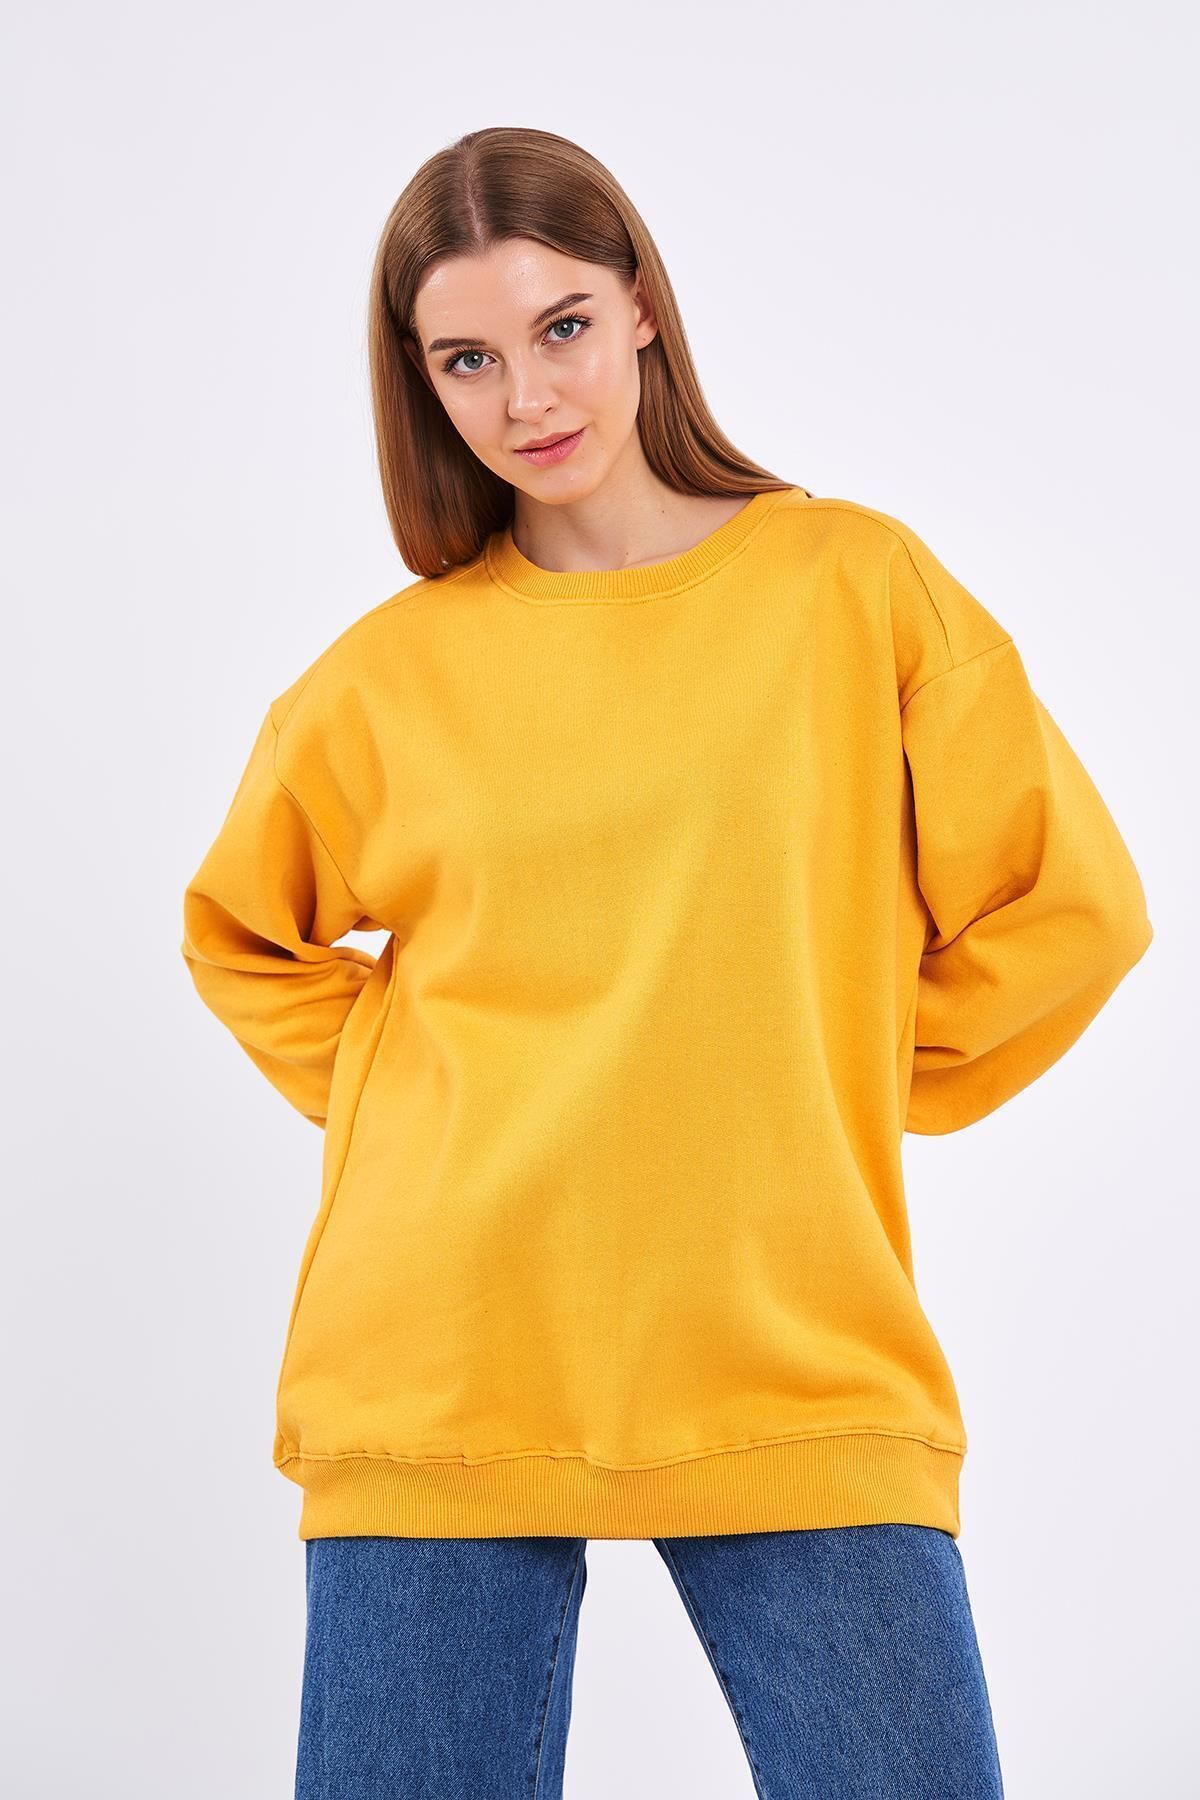 mmetalic Sarı Kadın Pamuklu Oversize Basic Bisiklet Yaka Sweatshirt